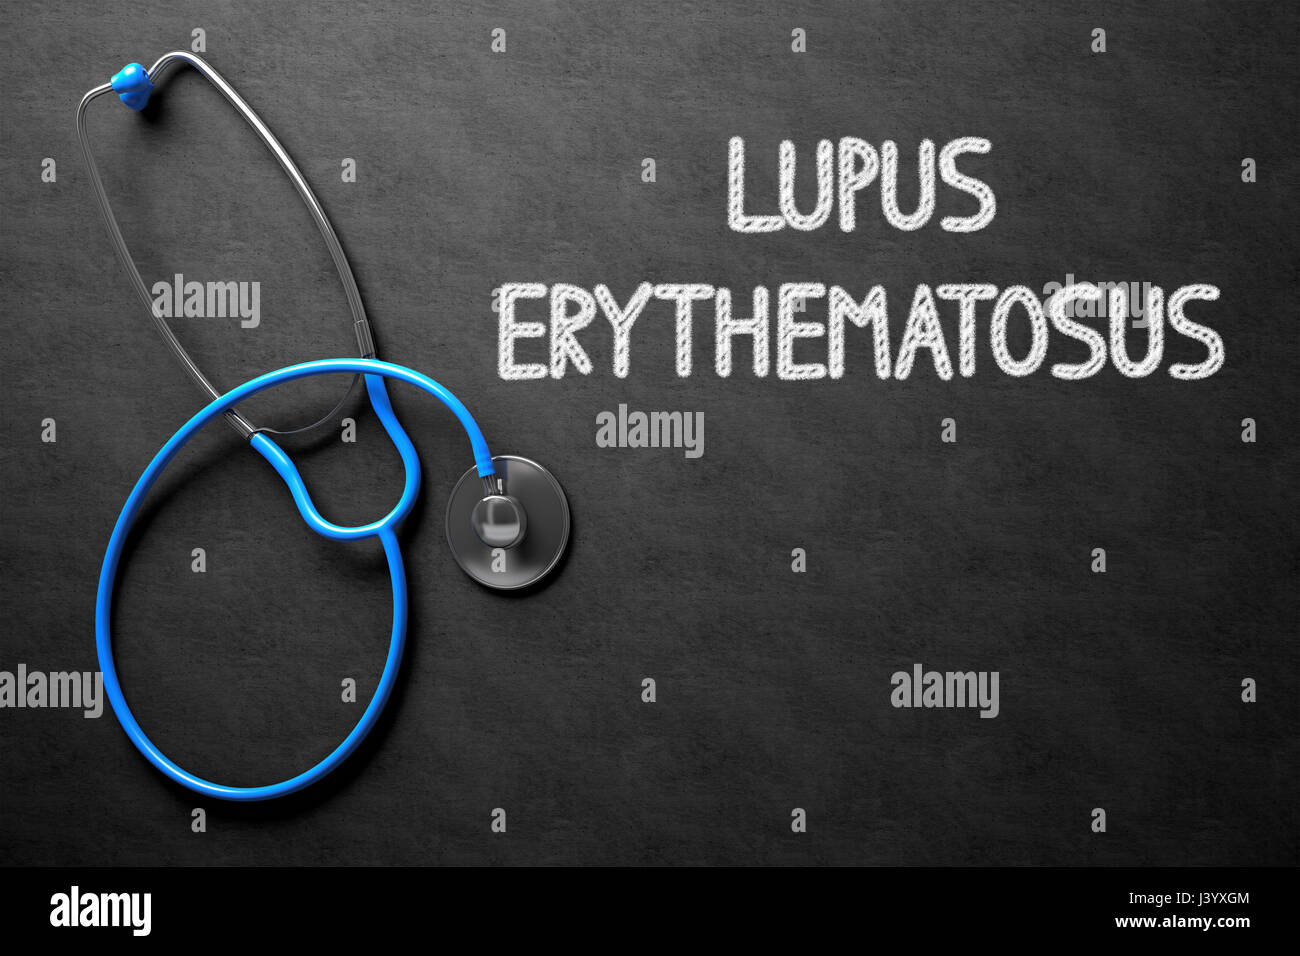 Lupus Erythematosus on Chalkboard. 3D Illustration. Stock Photo